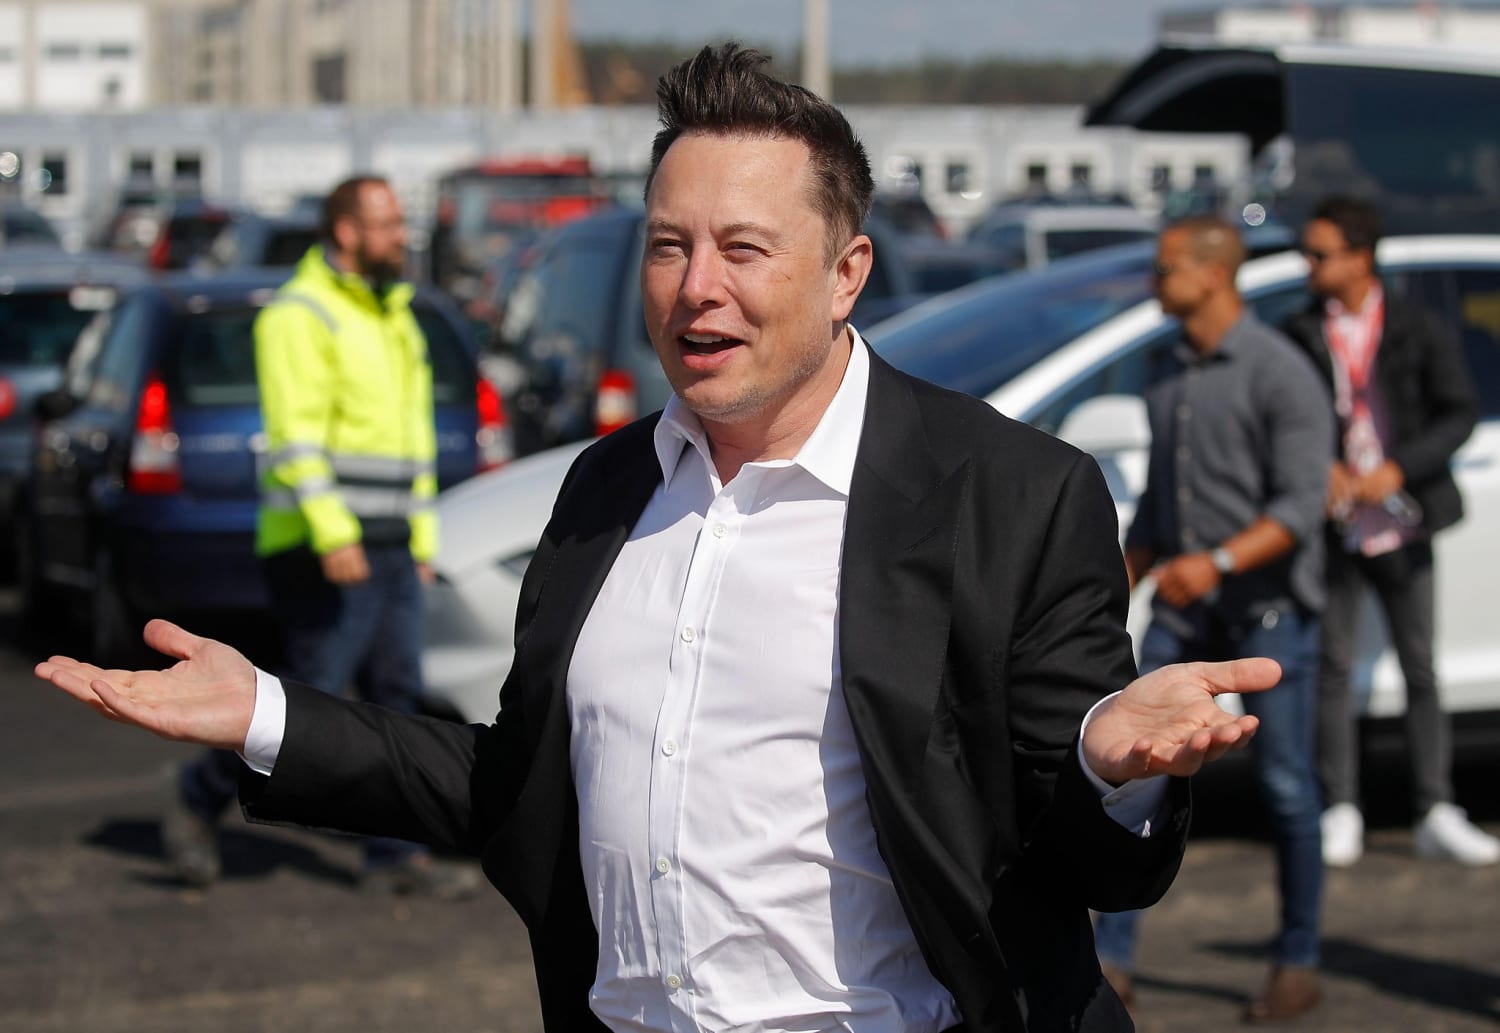 Elon Musk gets roasted for skit tweets ahead of hosting 'SNL'